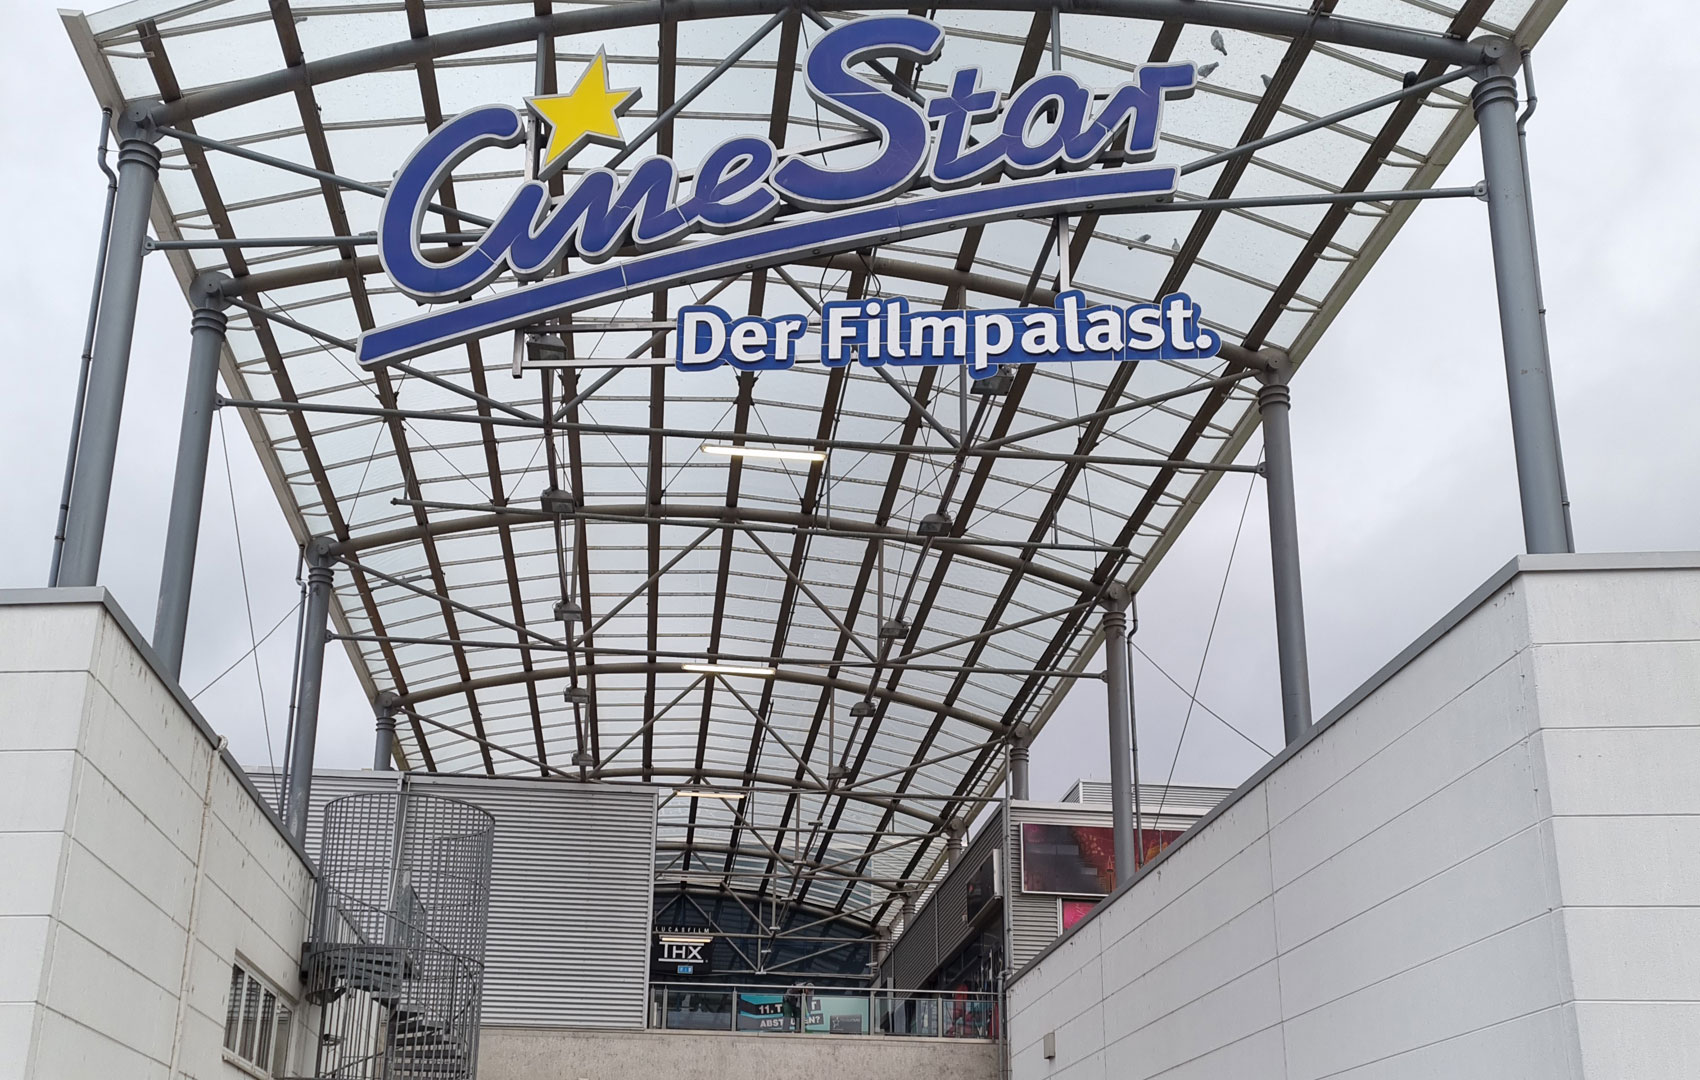 Frankfurt: Cinestar - Der Filmpalast